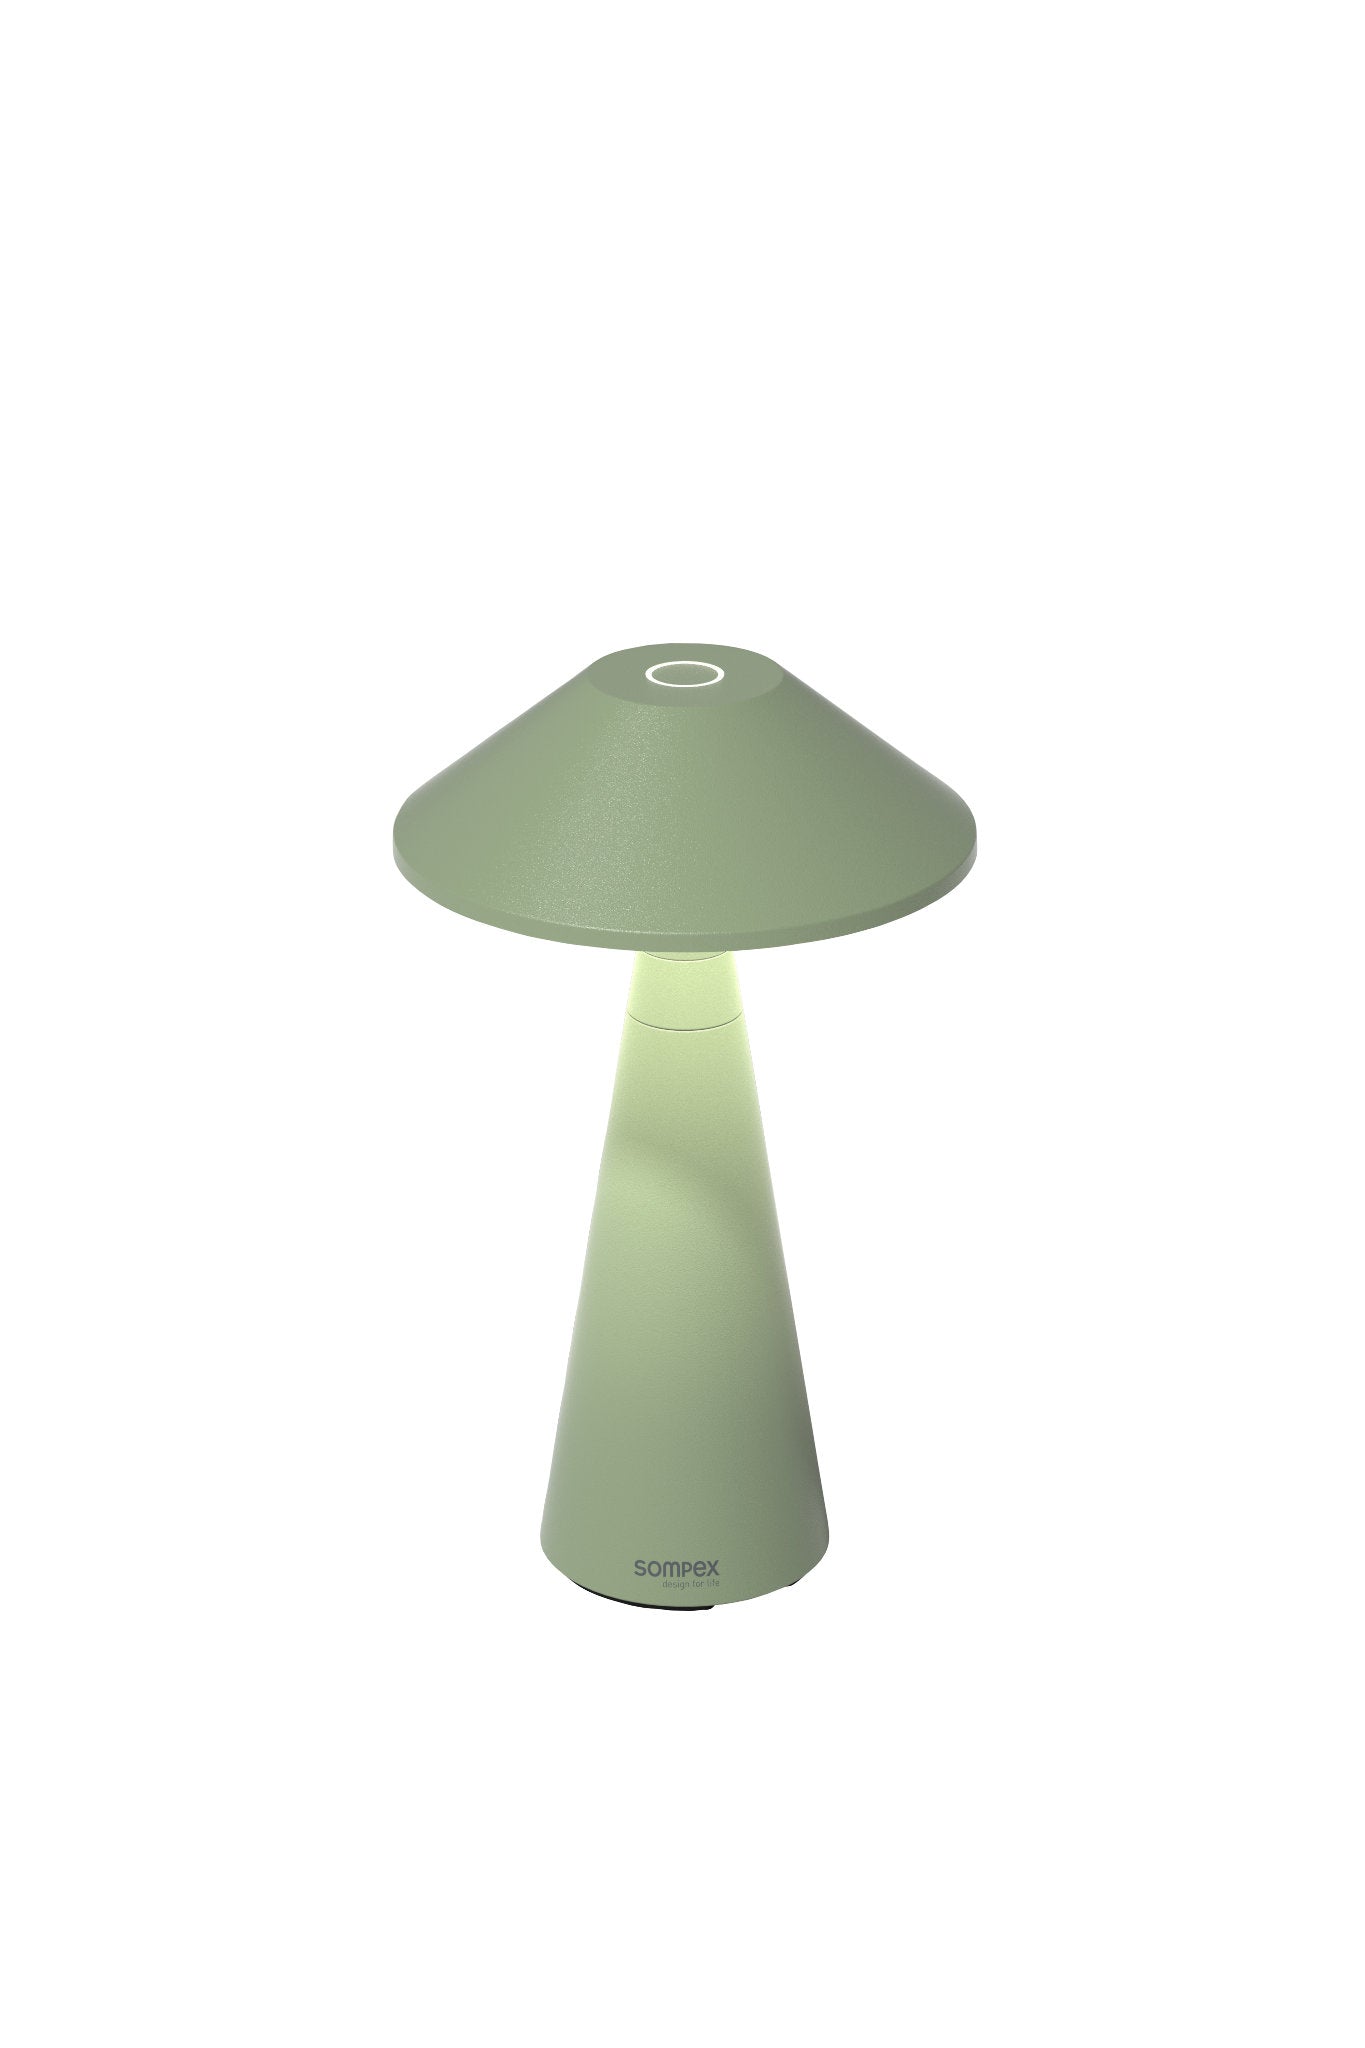 Move Outdoor Akkuleuchte von Sompex mit höhenverstellbarem Schirm, Farbe Olive